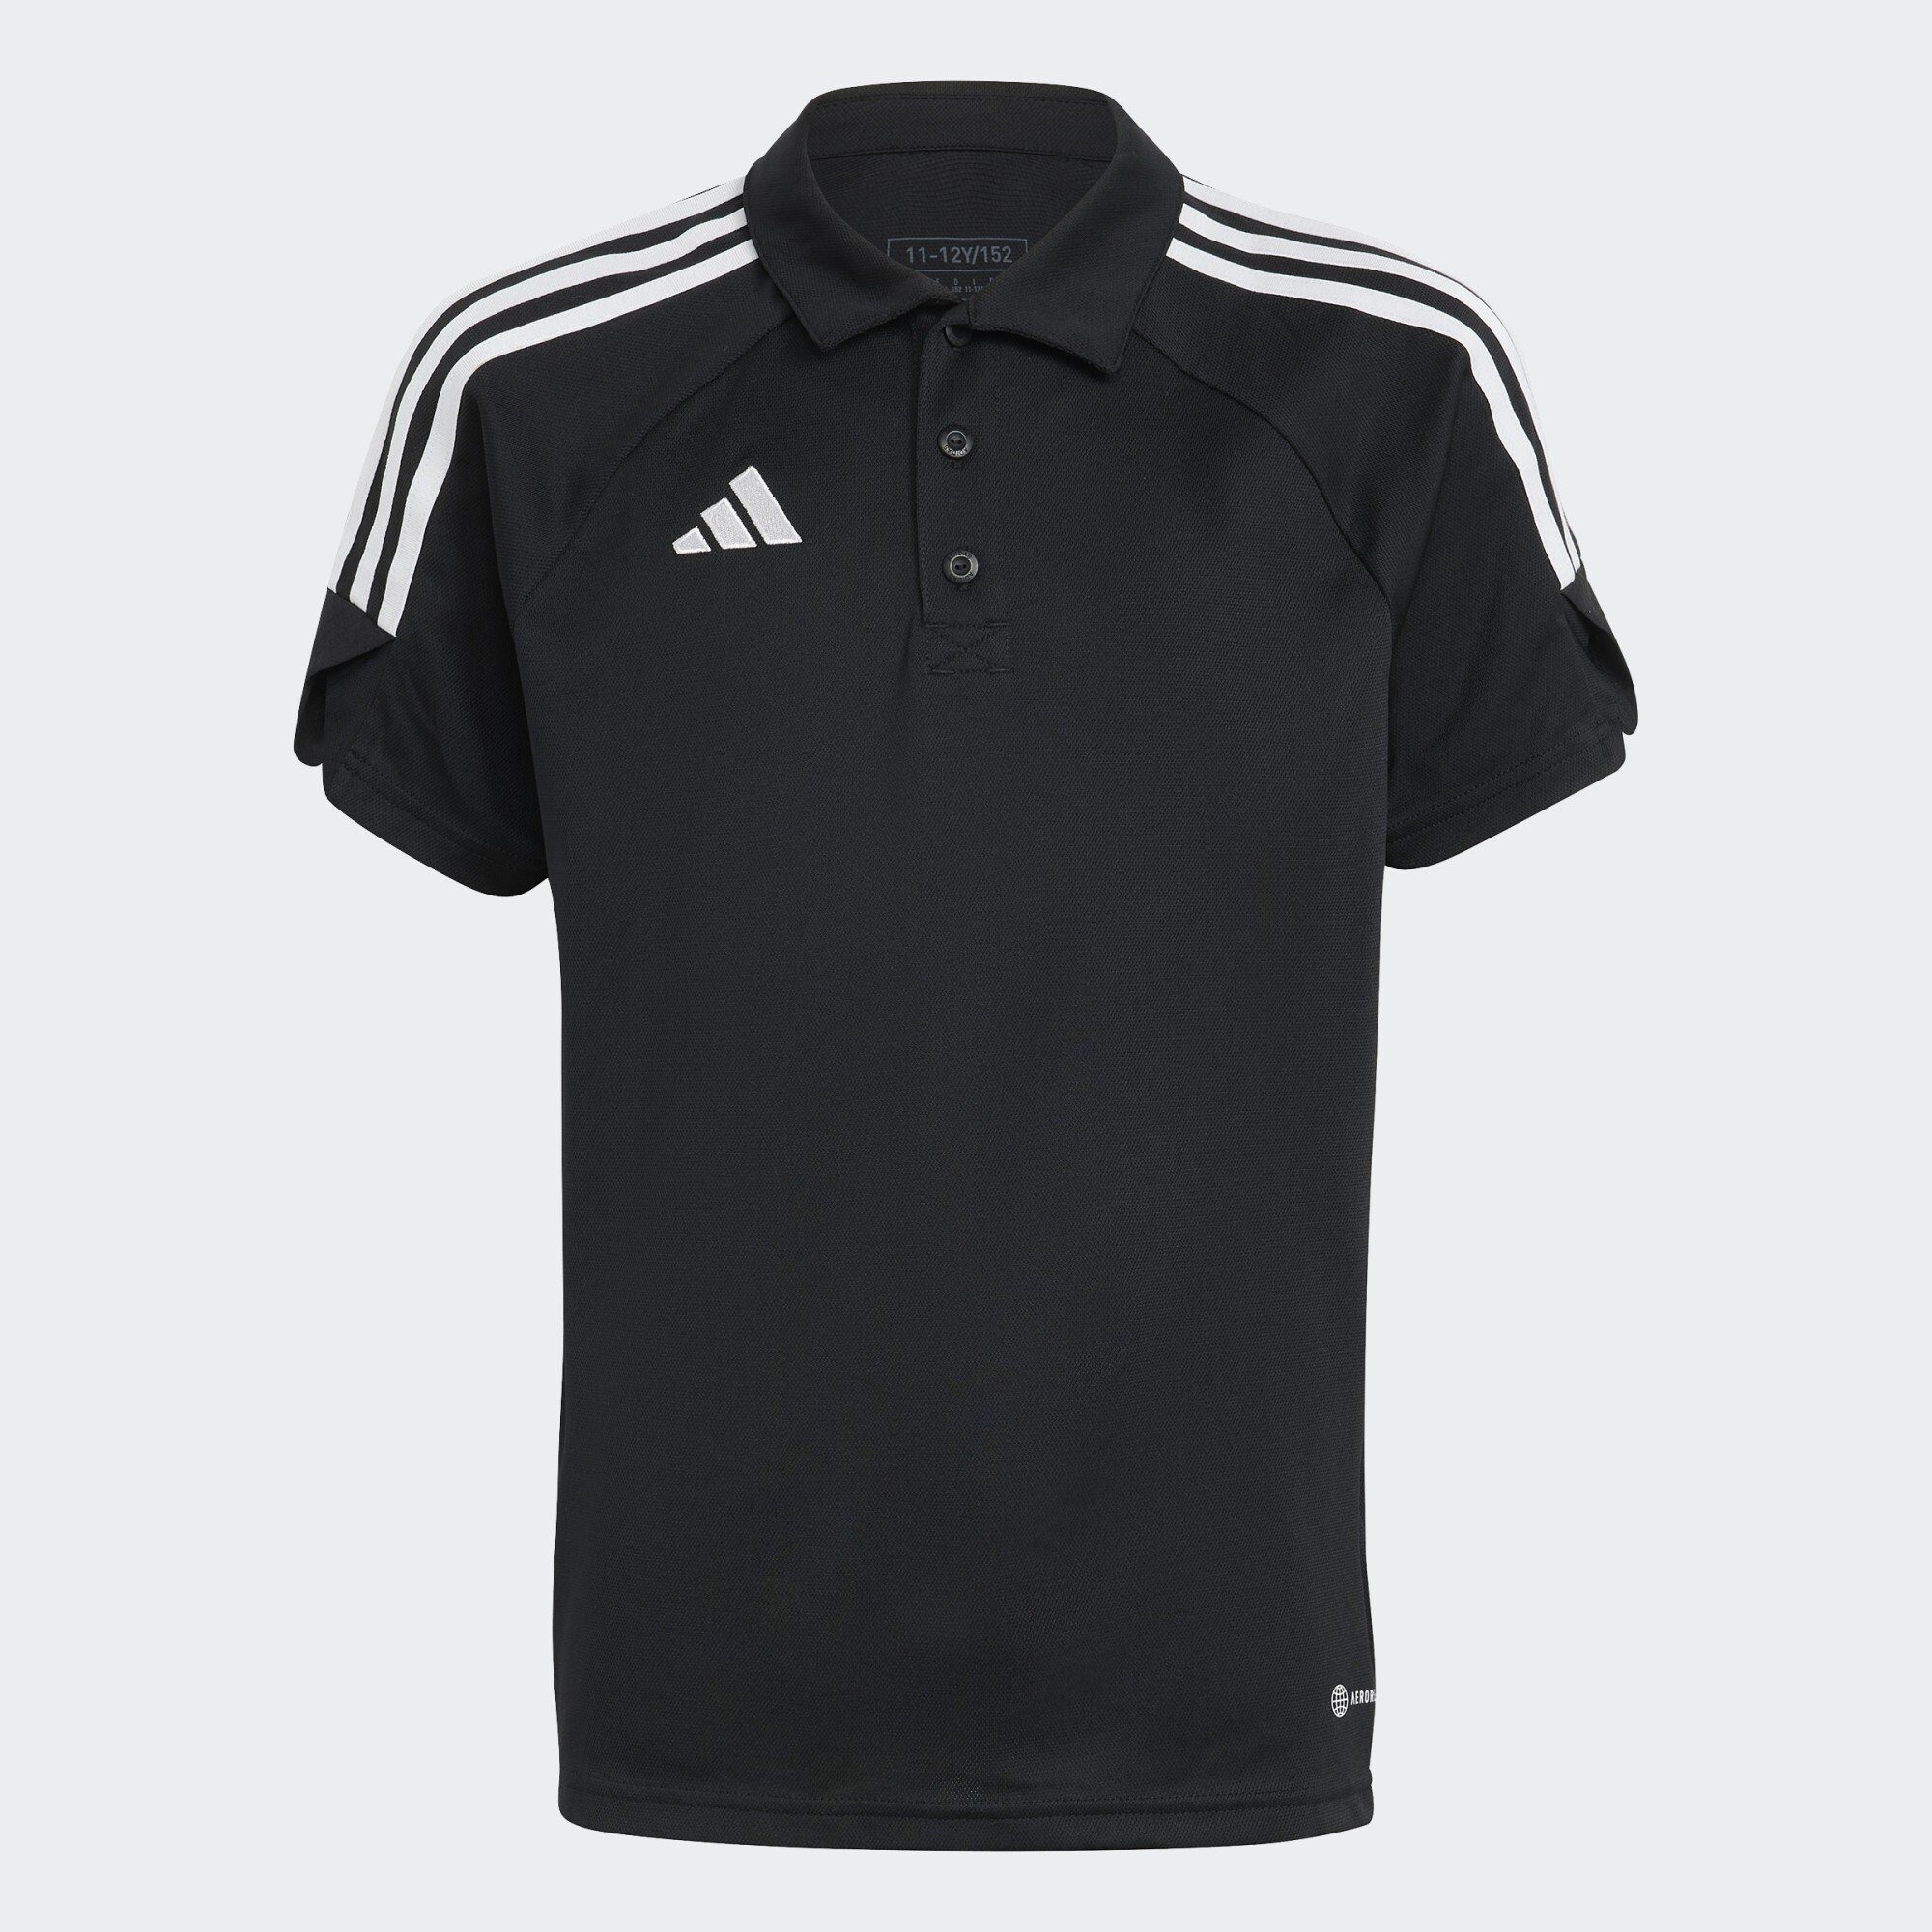 23 TIRO schwarz Performance Funktionsshirt POLOSHIRT adidas LEAGUE